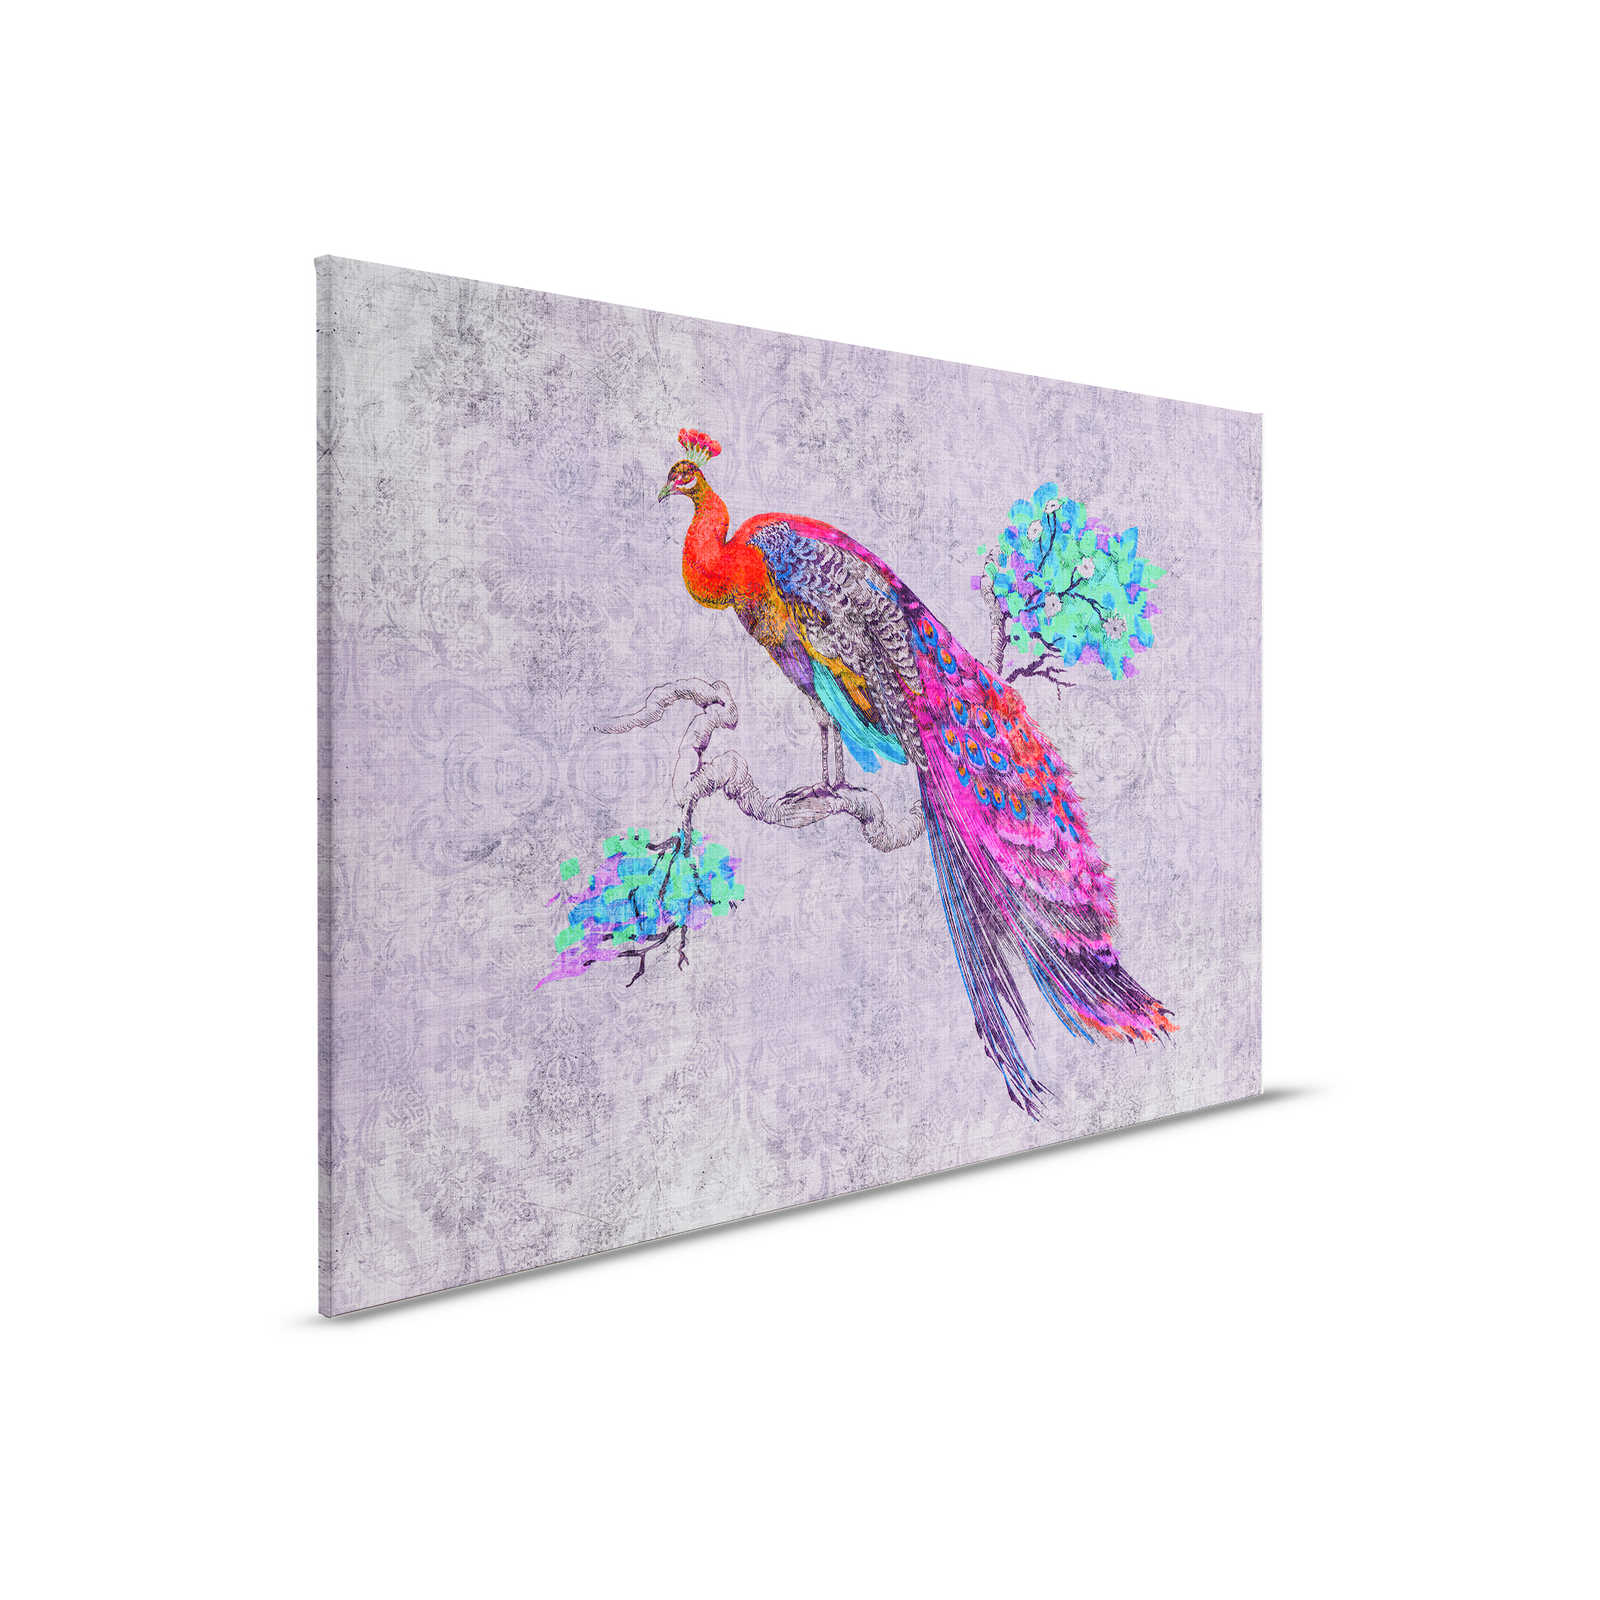 Peacock 3 - Tableau toile avec paon coloré - structure lin naturel - 0,90 m x 0,60 m
